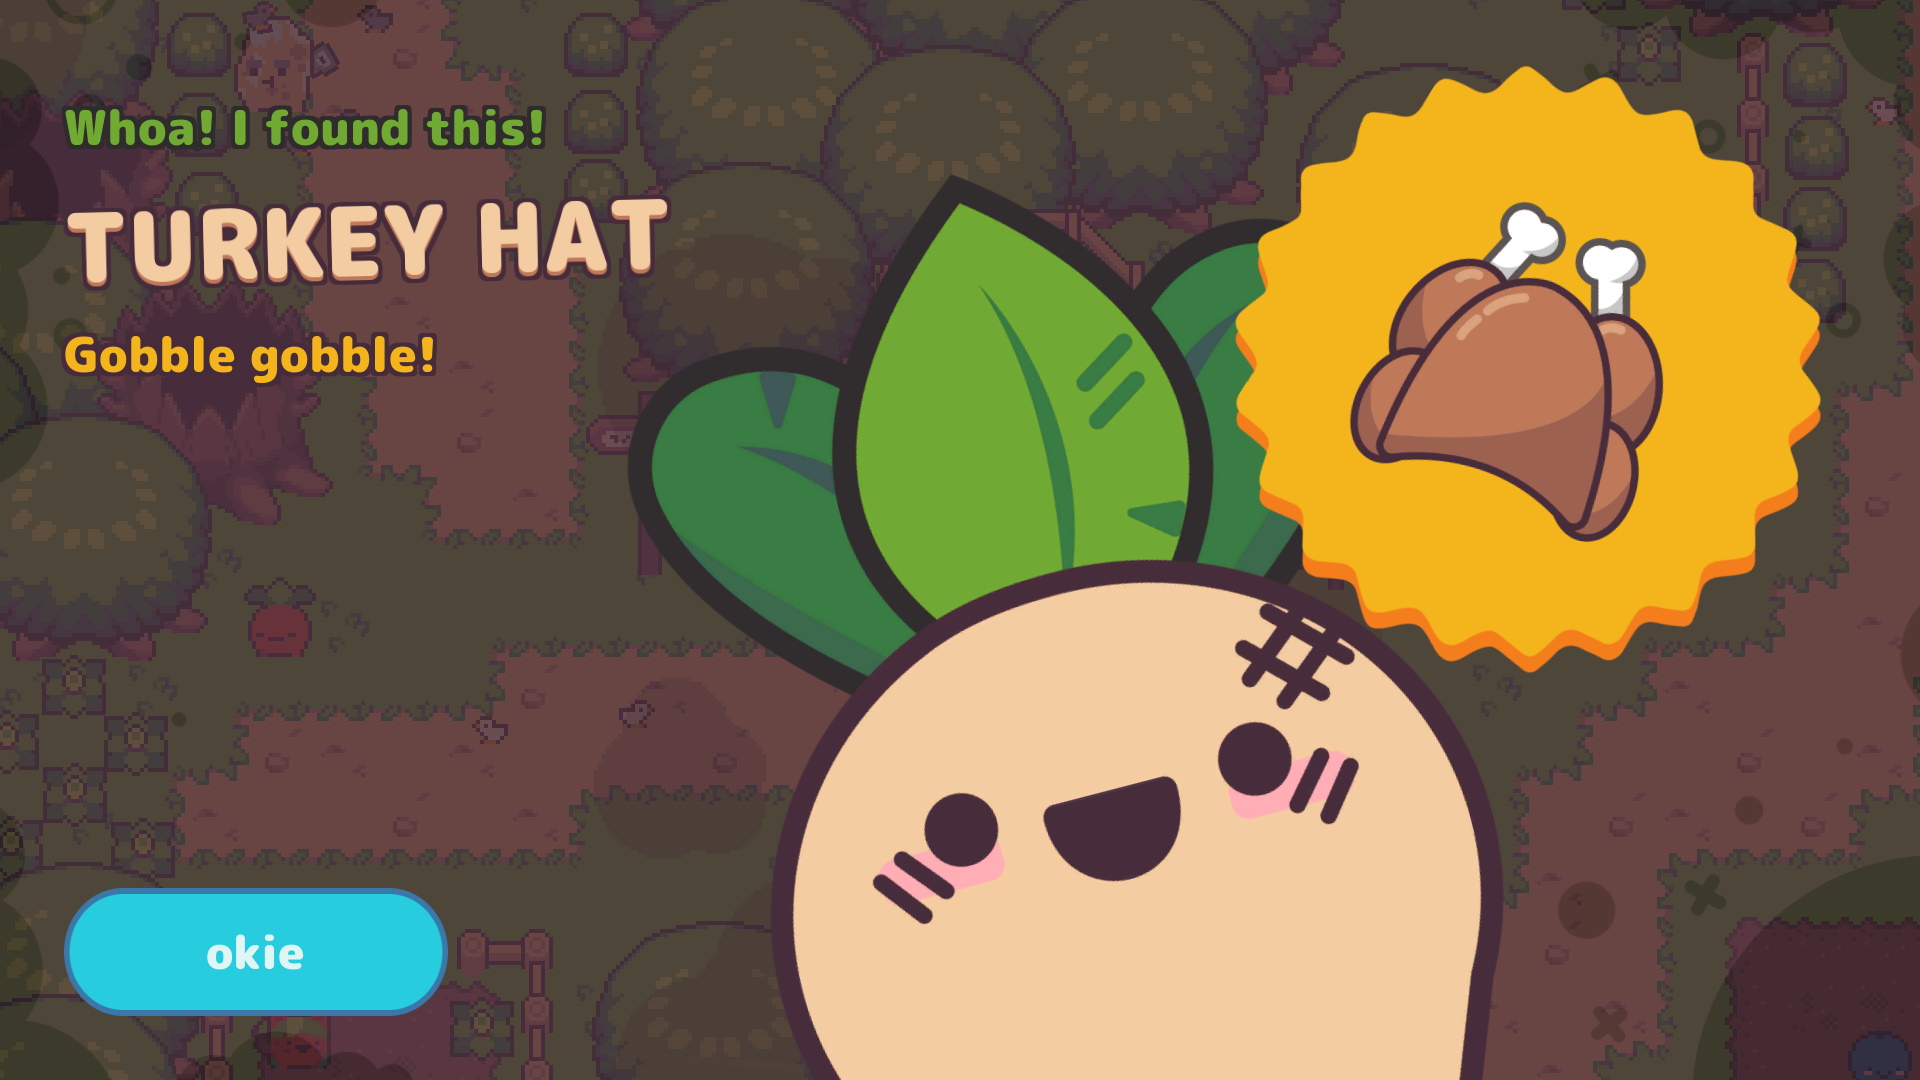 Woah! I found a Turkey hat!